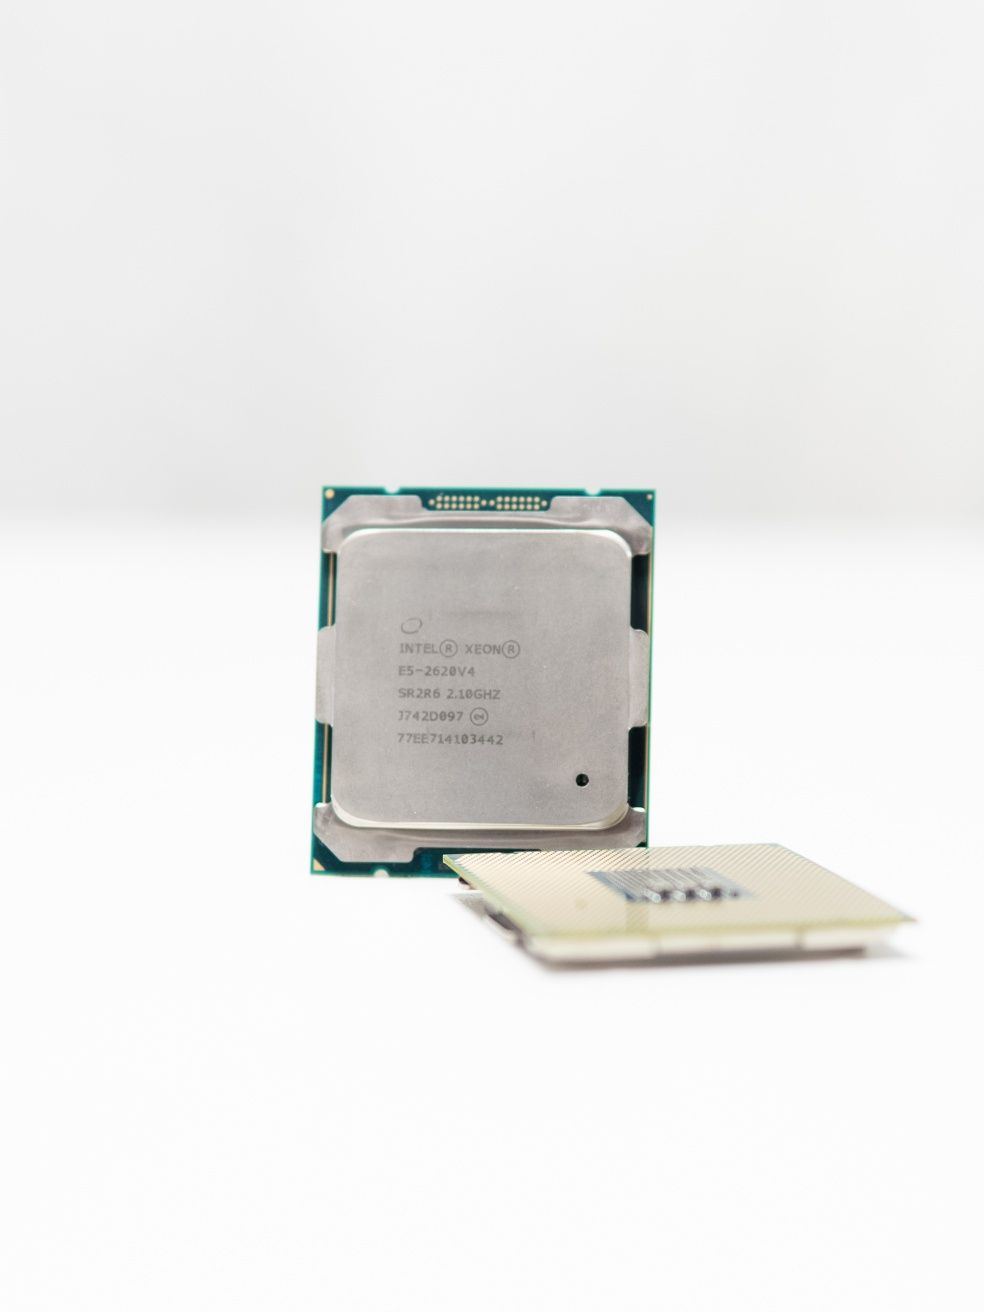 Procesor Intel Xeon E5-2620v4, 8 Cores 16 Threads, 2.1-3.0 Ghz